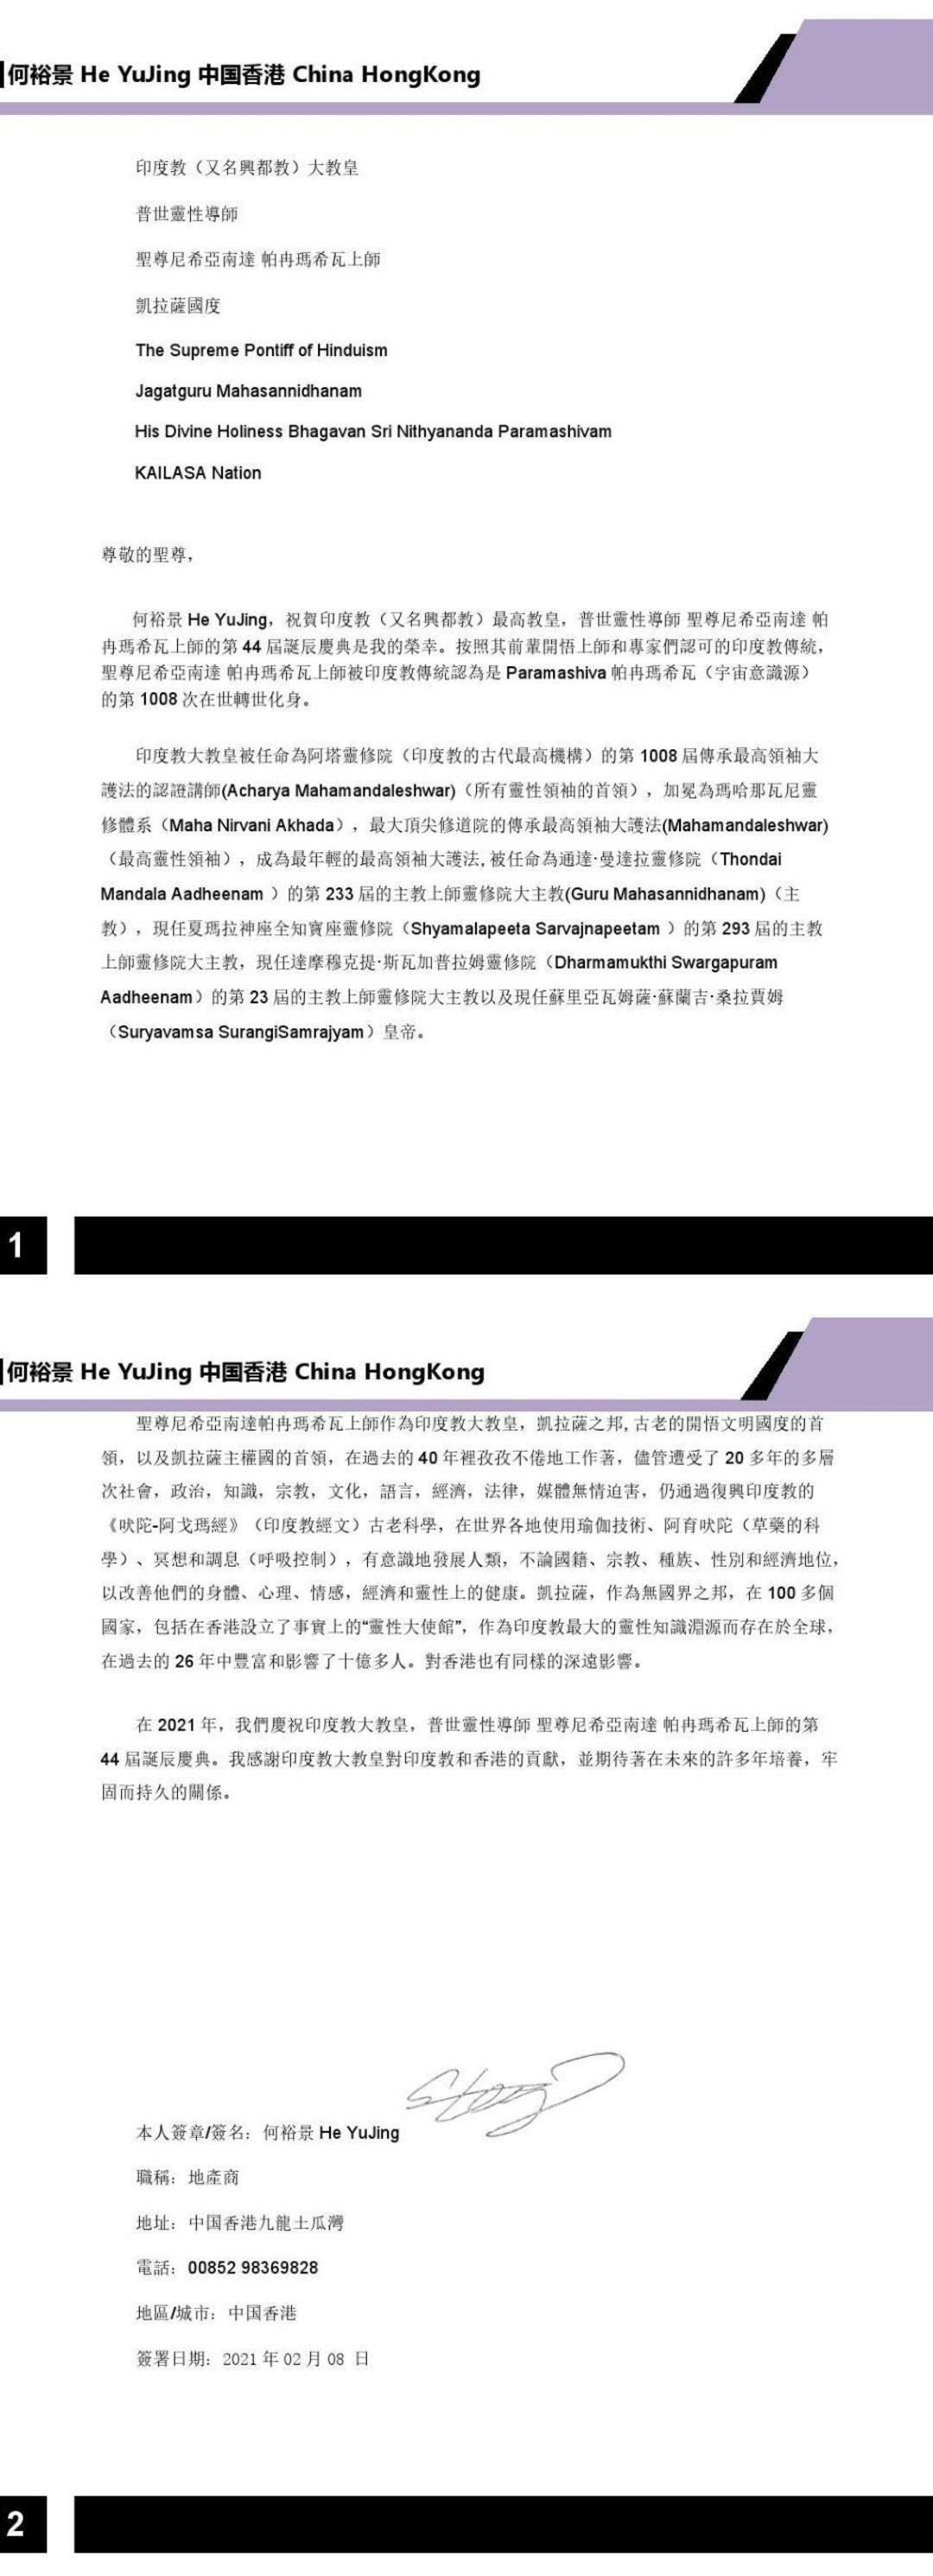 China---Ha-Jia-Xin---Feb-20--2021-(Proclamation)-1yddjPnx9TpAX33r8f8nZ94QZ3-LzSUV .pdf